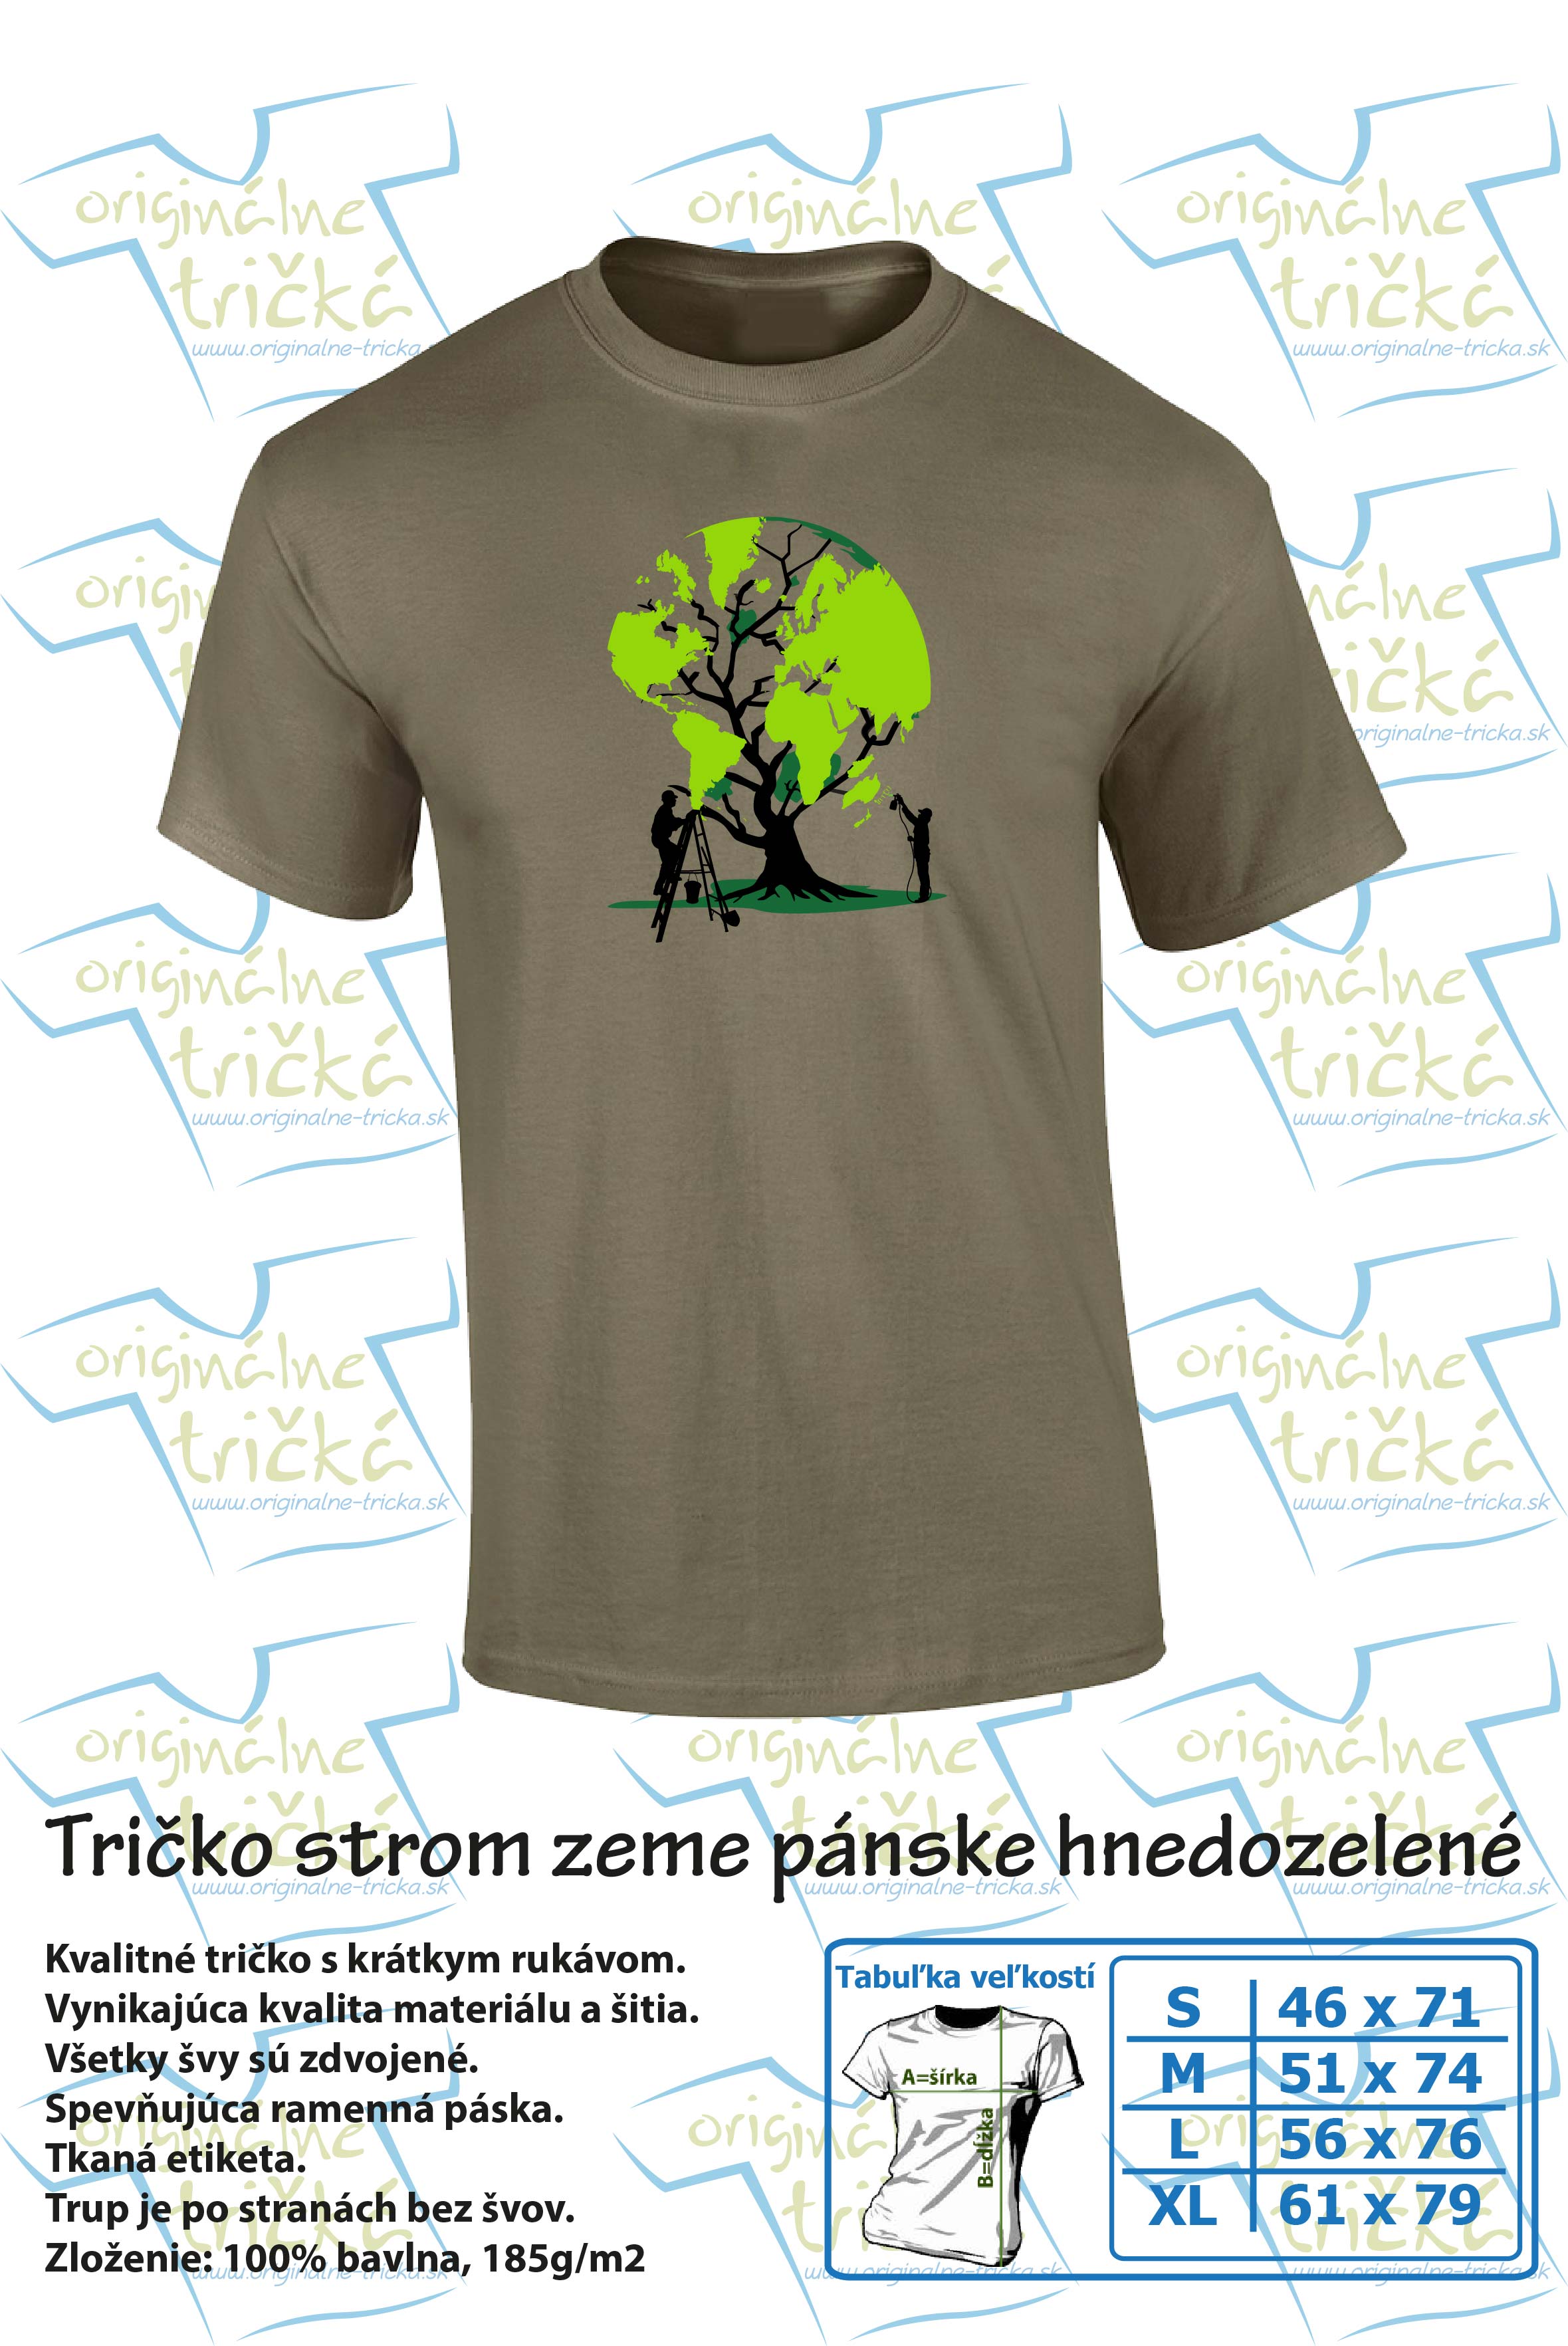 Tričko strom zeme pánske hnedozelené